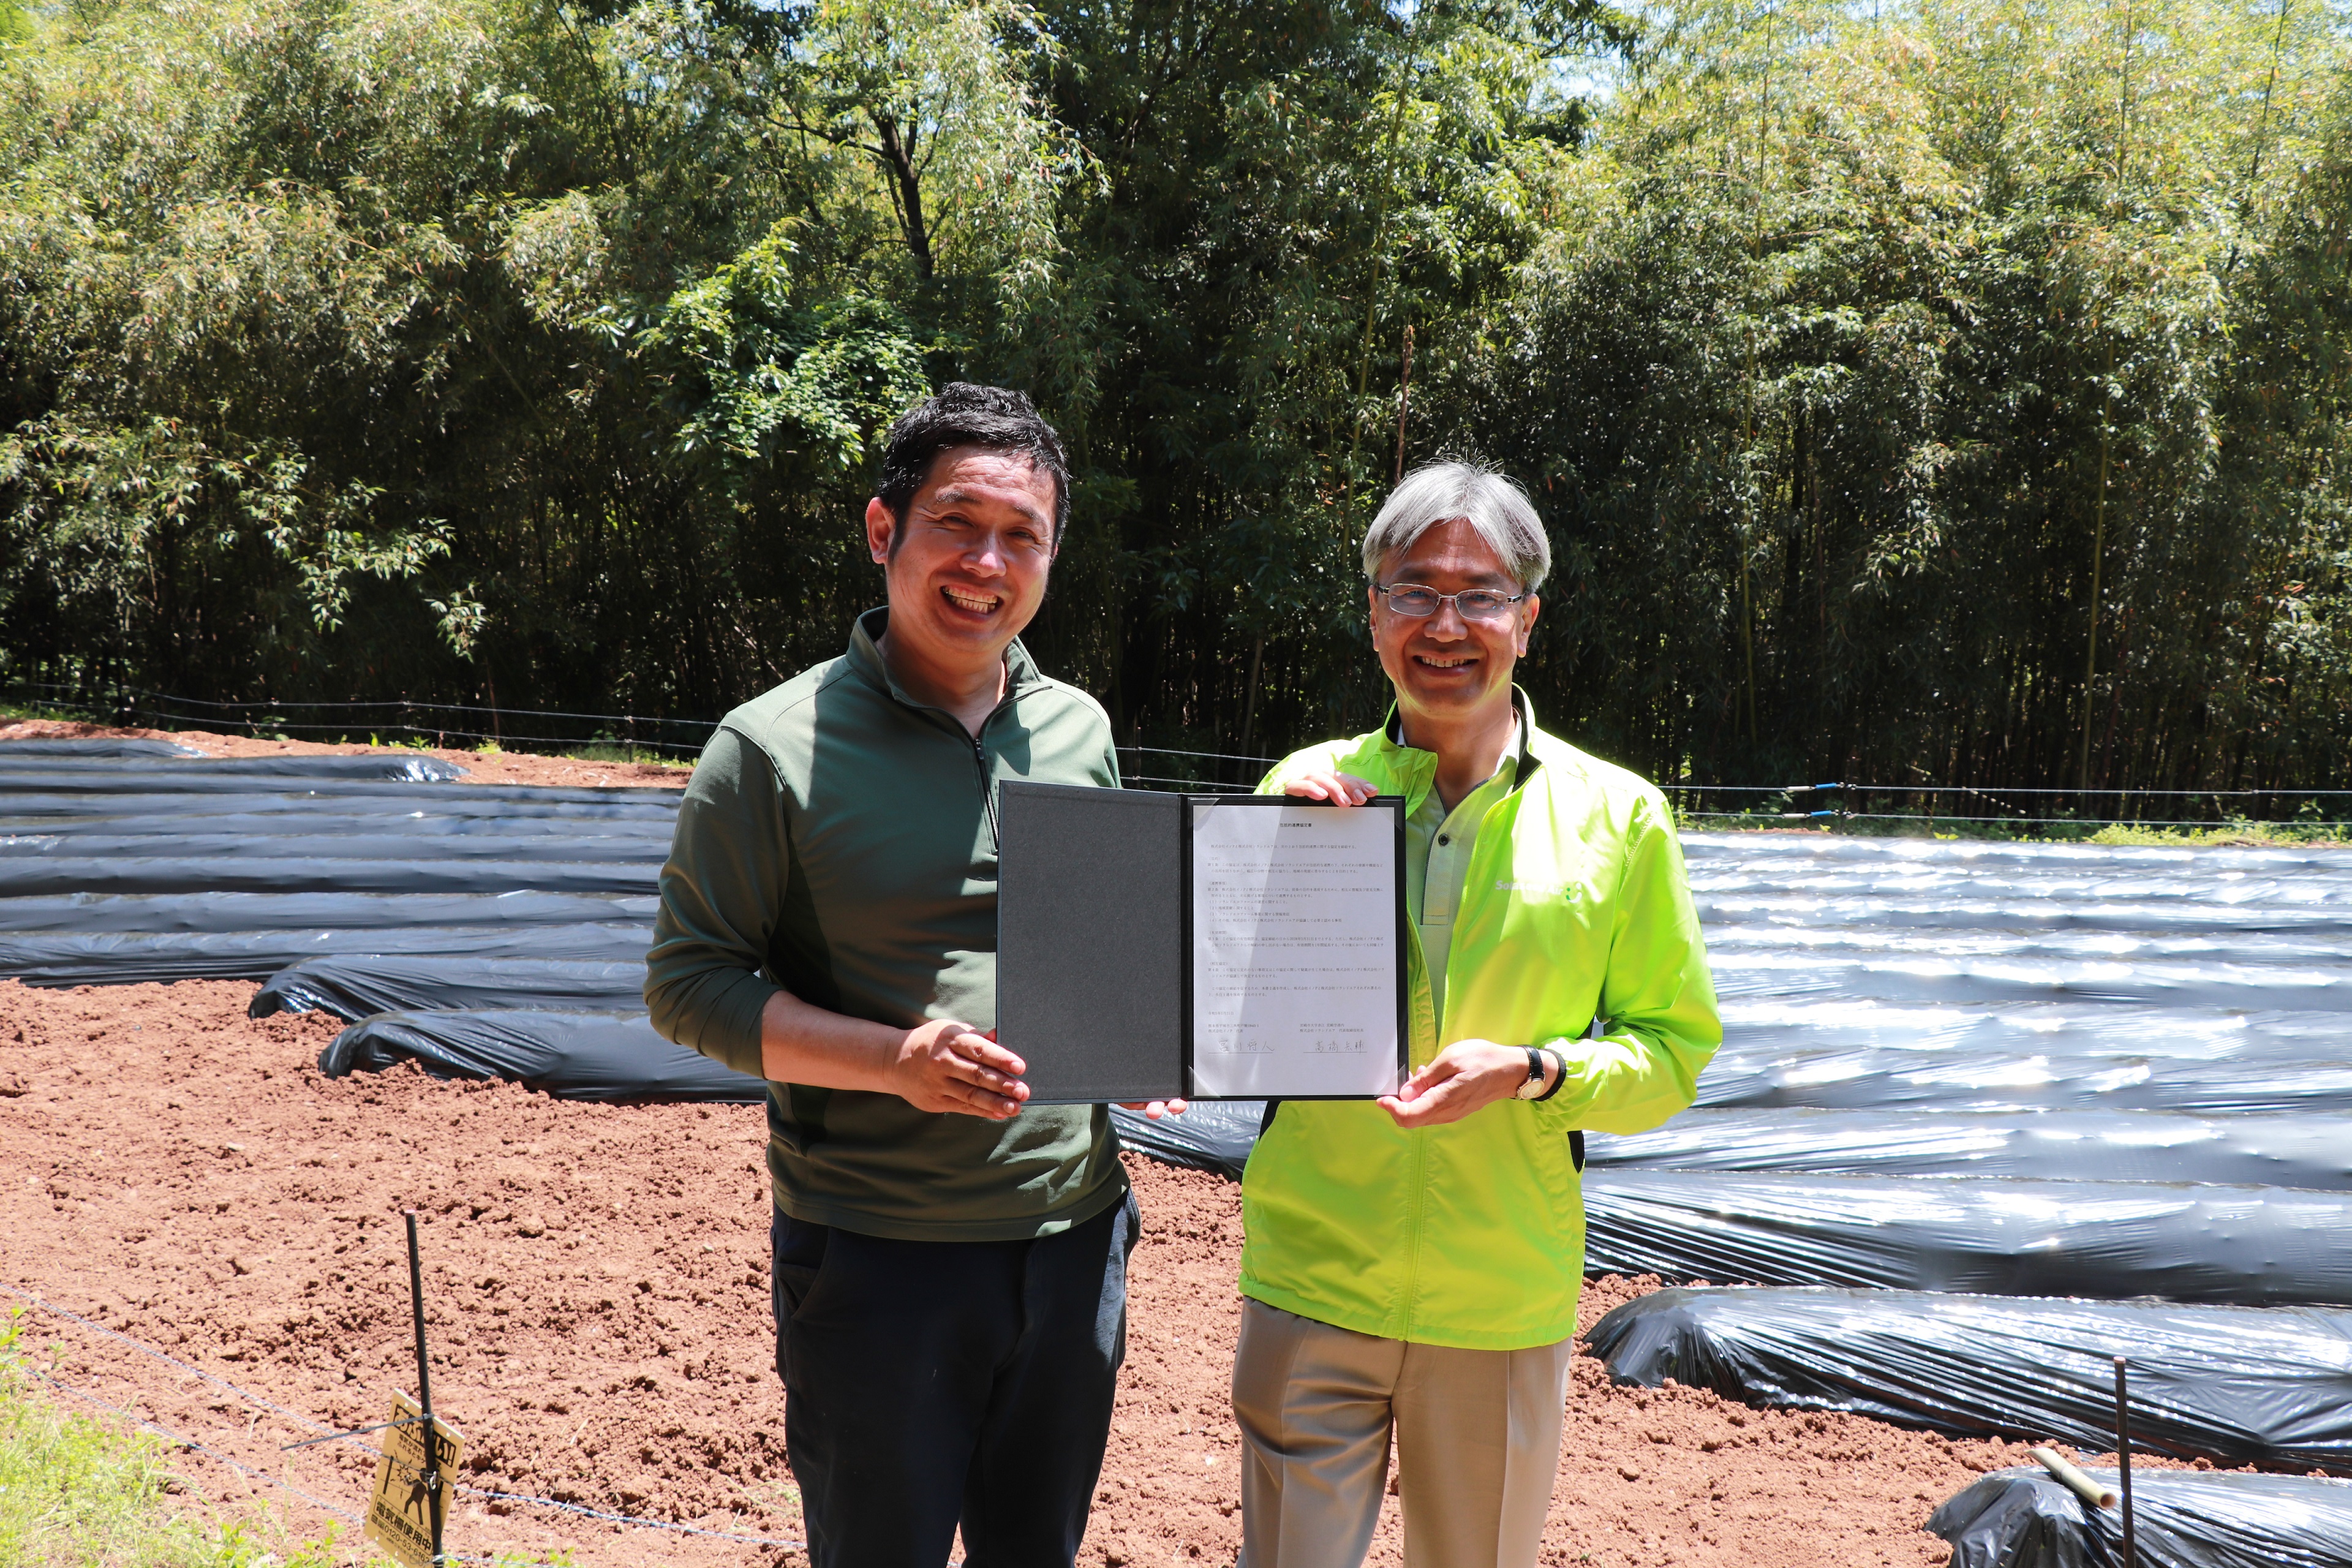 調印式を終え、包括的連携協定書を披露する宮川代表と髙橋取締役社長の写真